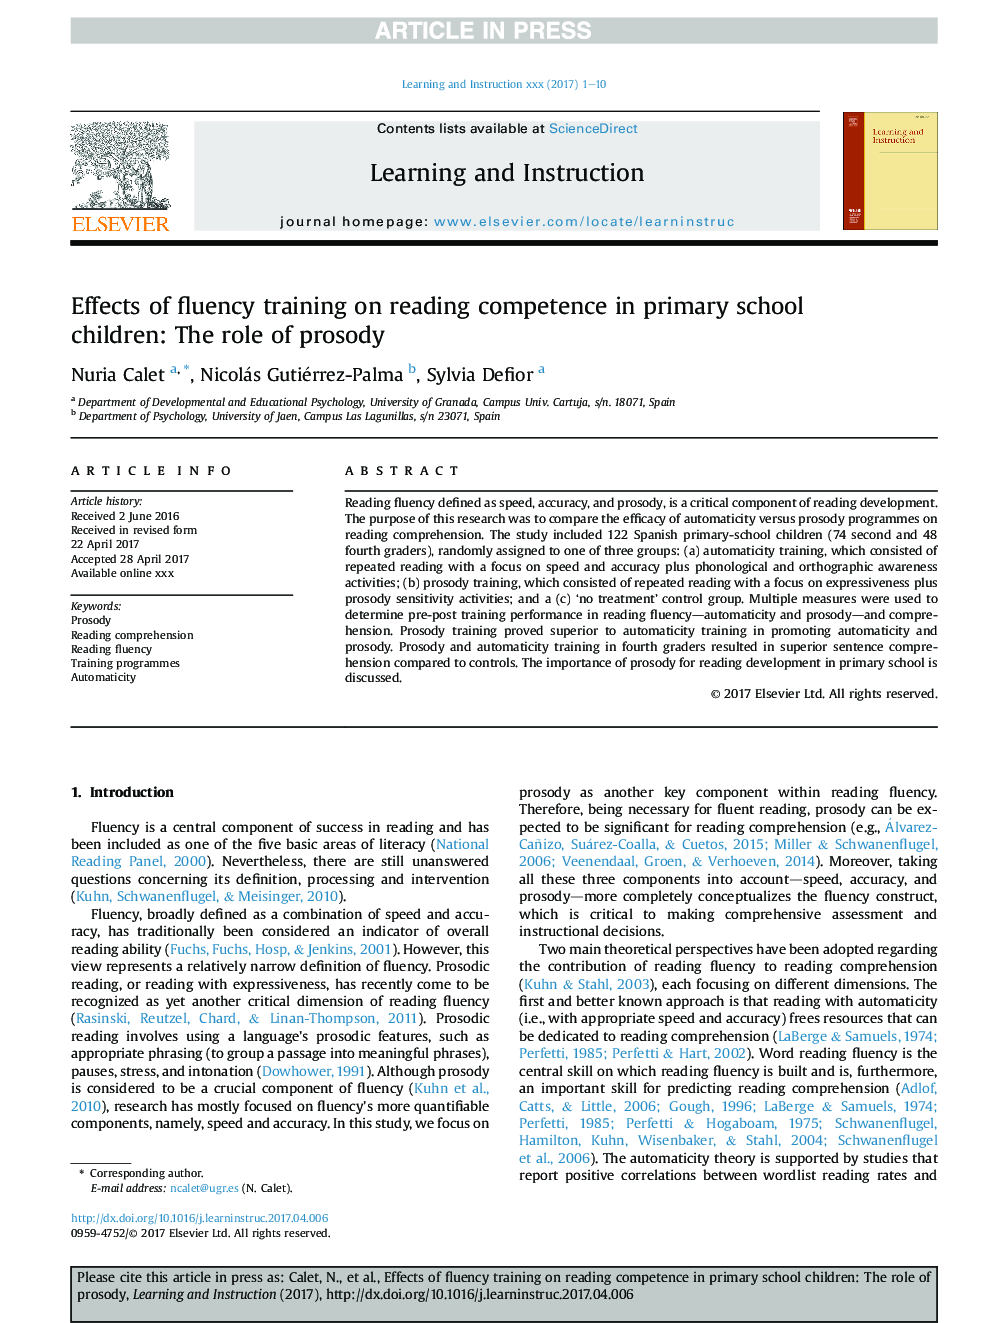 تأثیر آموزش غلط بر مهارت خواندن در دانش آموزان ابتدایی: نقش آموزش و پرورش 